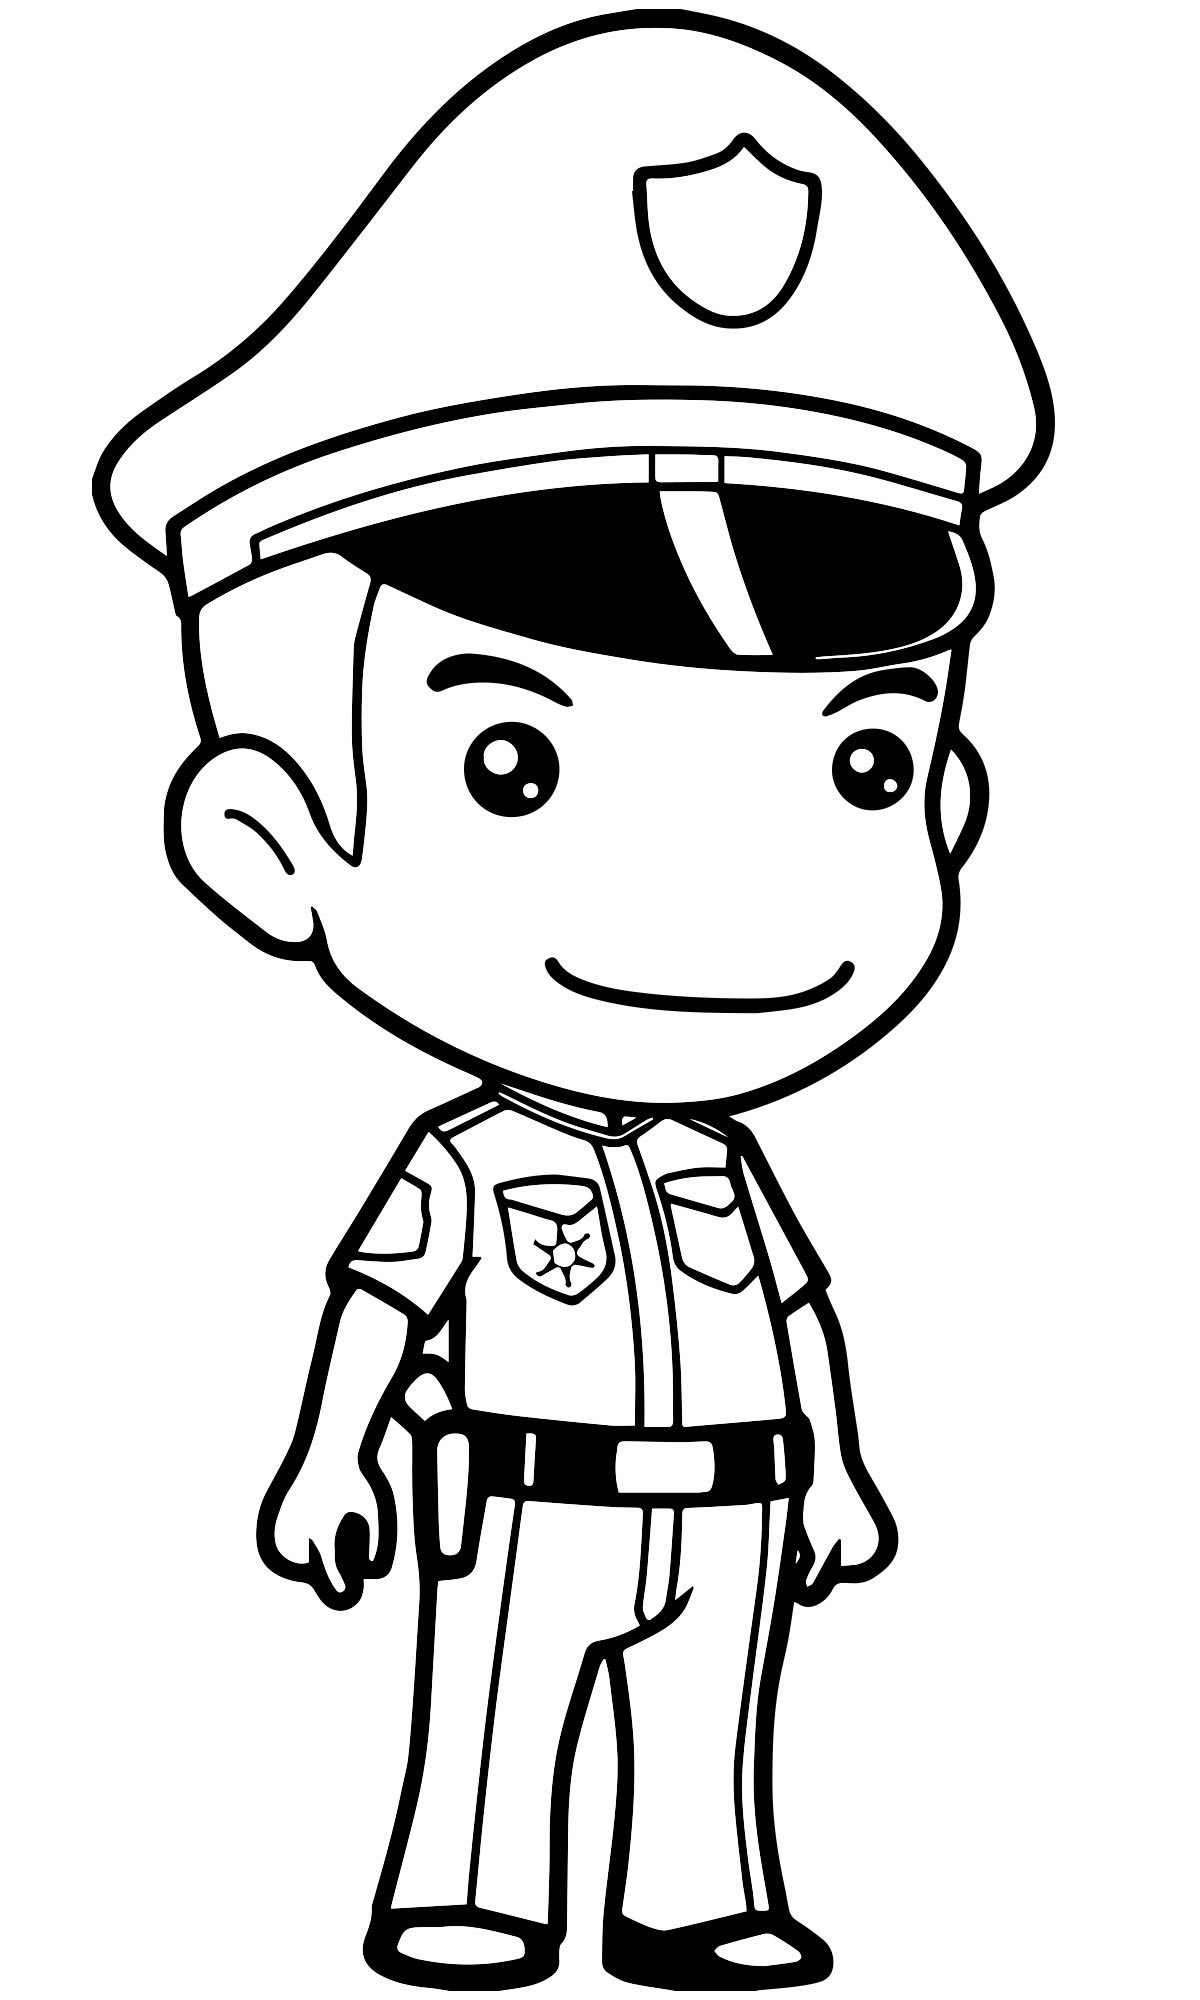 Полицейский — раскраска для детей. Распечатать бесплатно.